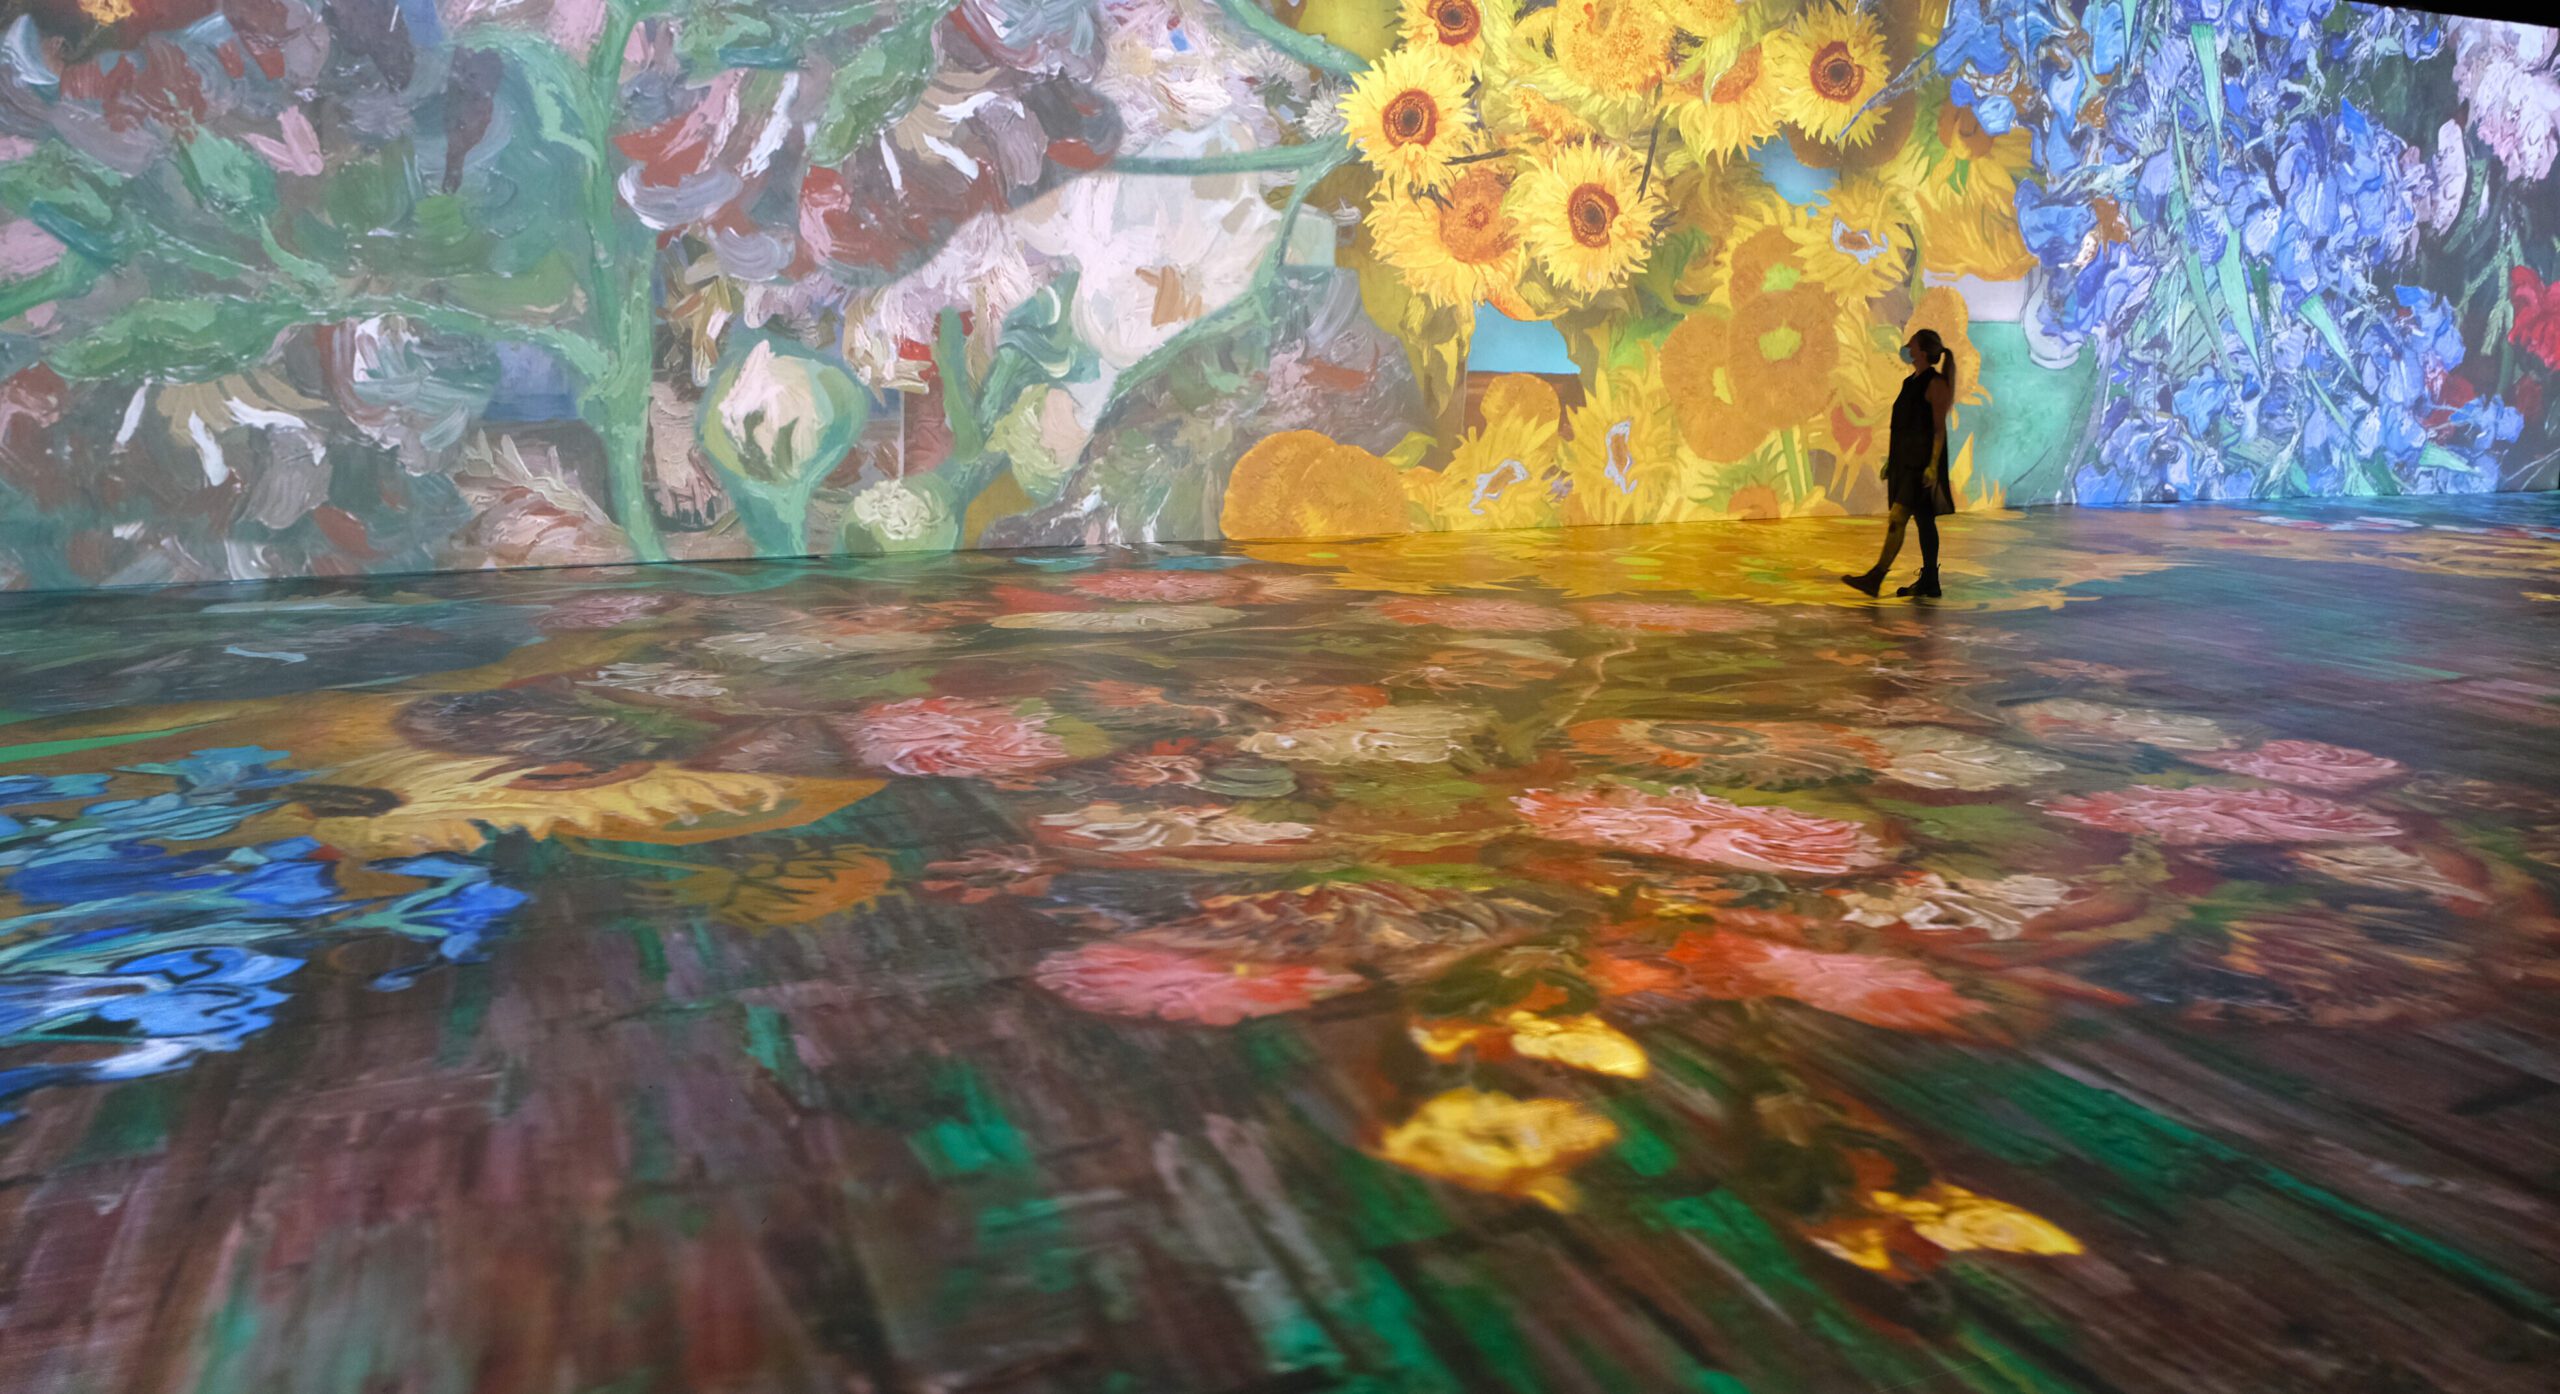 Beyond Van Gogh: Maior Exposição Imersiva Mundial da obra do gênio holandês chega ao Brasil em 17 de março